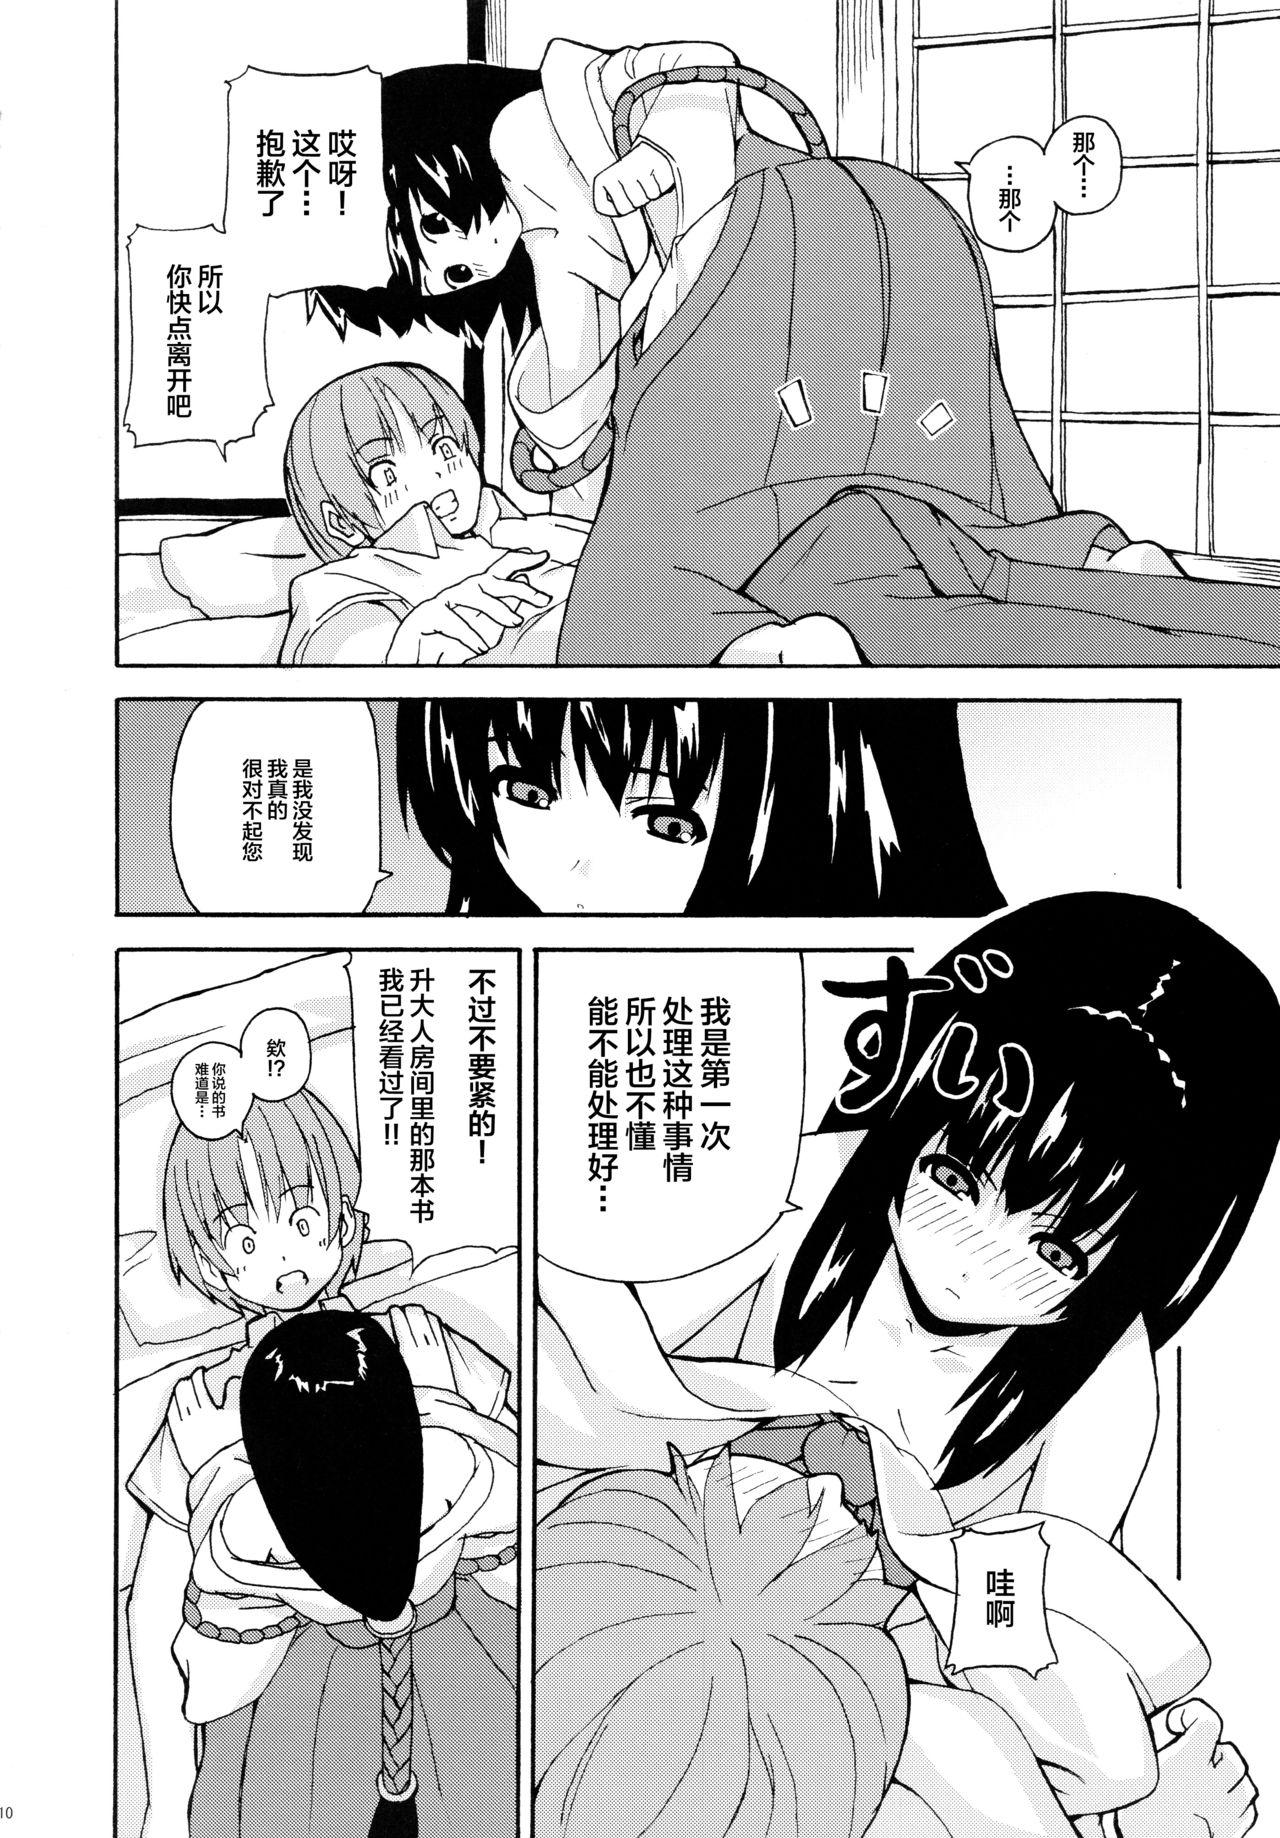 Red Hare, Tokidoki Oinari-sama 2 - Wagaya no oinari-sama Pussysex - Page 10